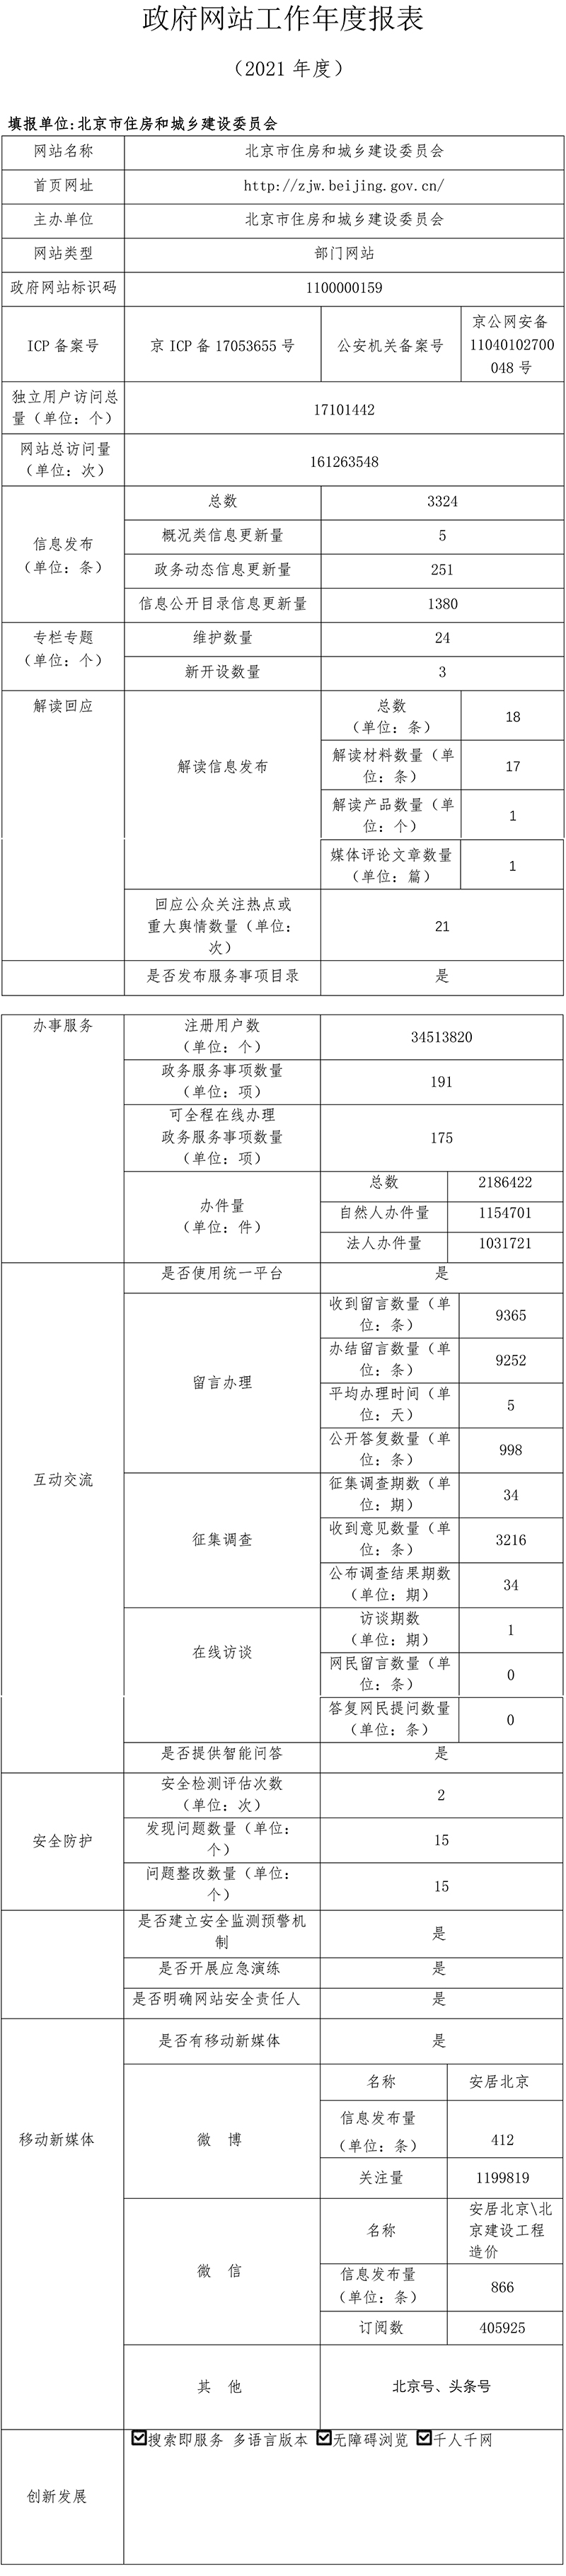 北京市住房和城乡建设委员会2021年政府网站年度工作报表